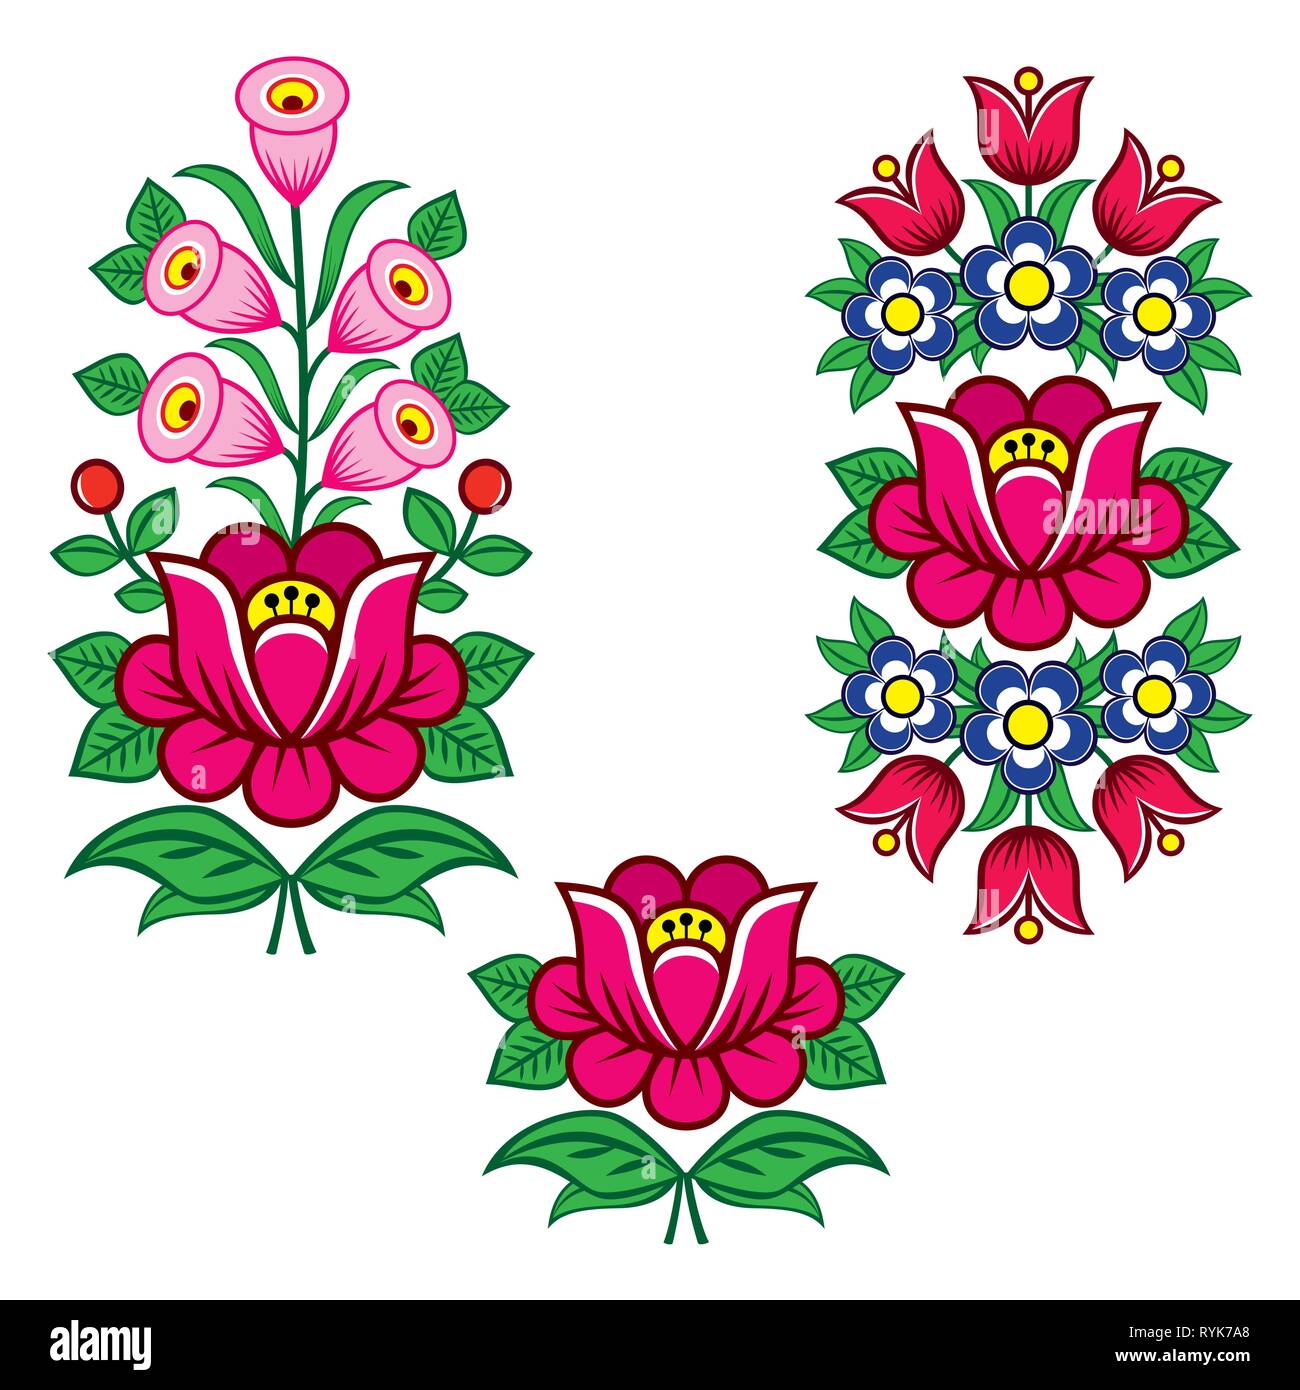 Arte popolare polacca disegni vettoriali con fiori per weddding invito, biglietto di auguri, Zalipie patterns con fiori Illustrazione Vettoriale